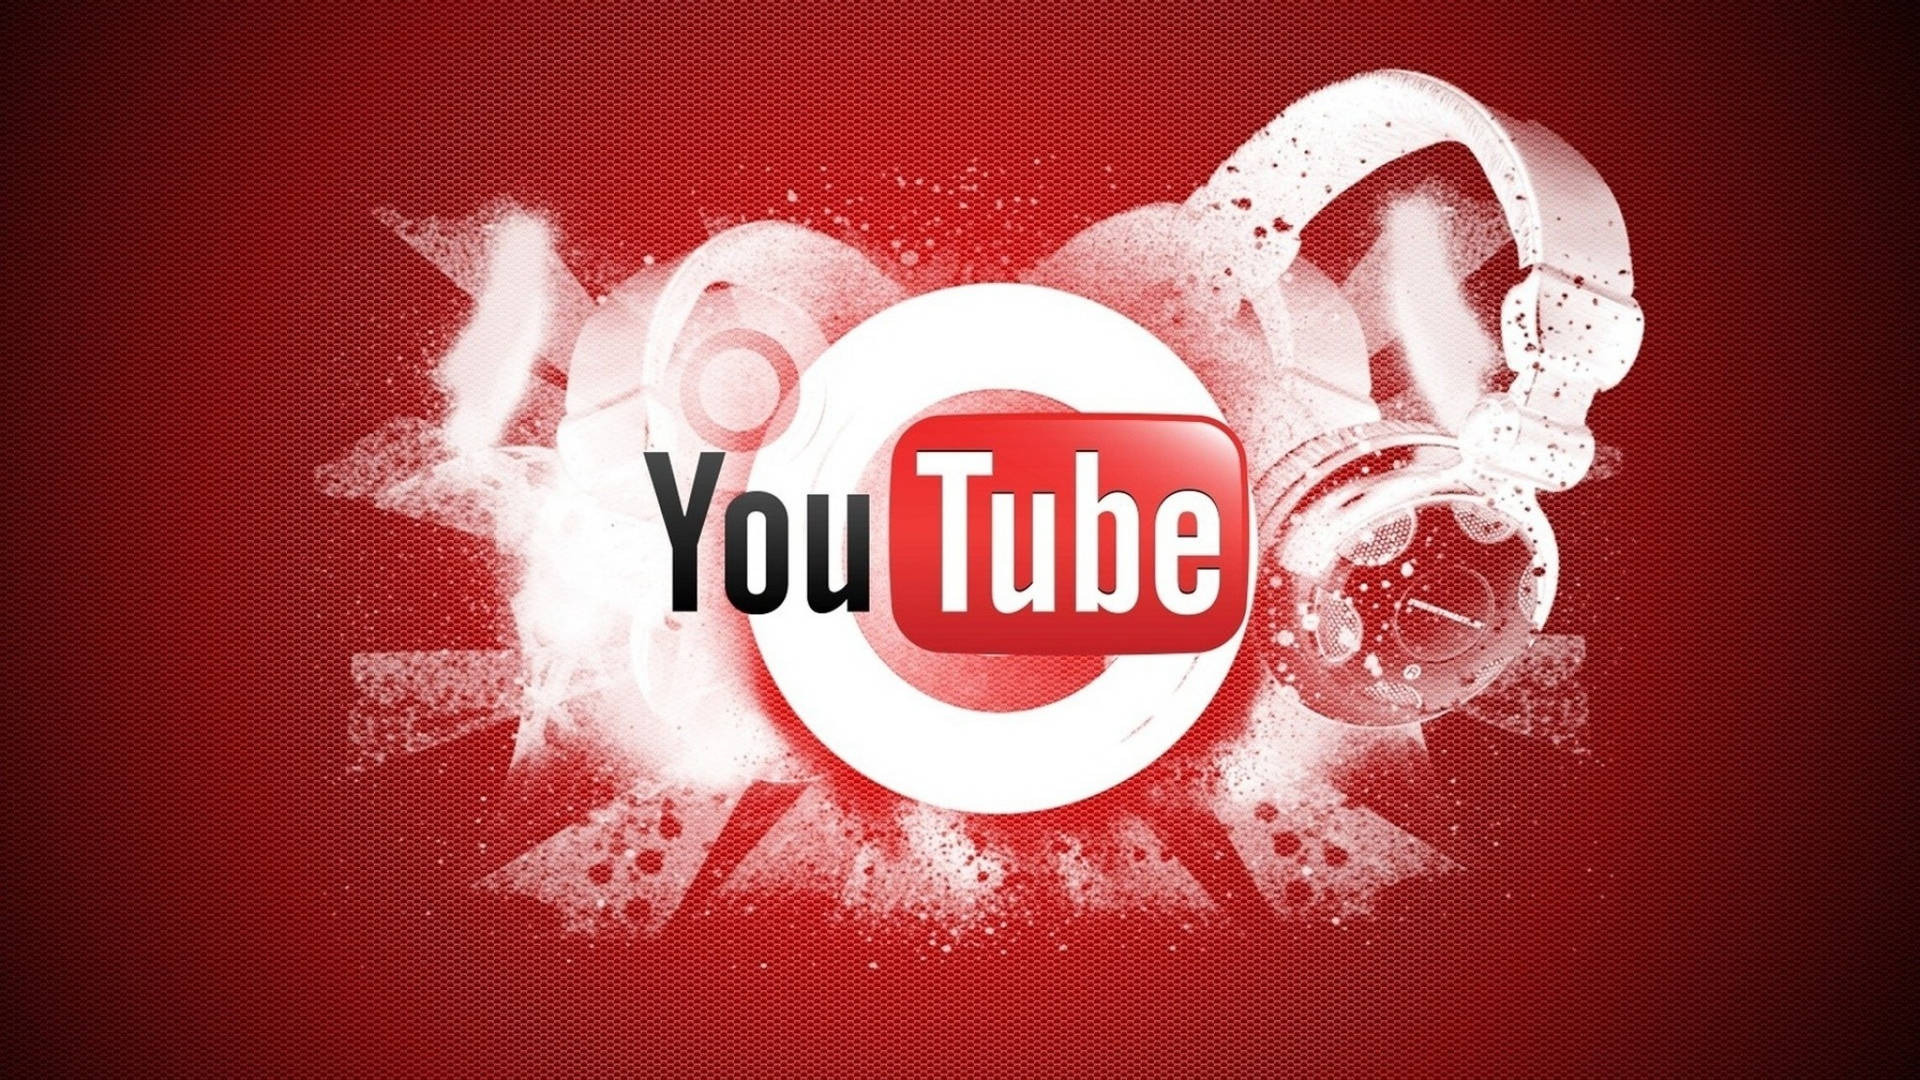 Logotipode Youtube Con Audífonos Blancos. Fondo de pantalla